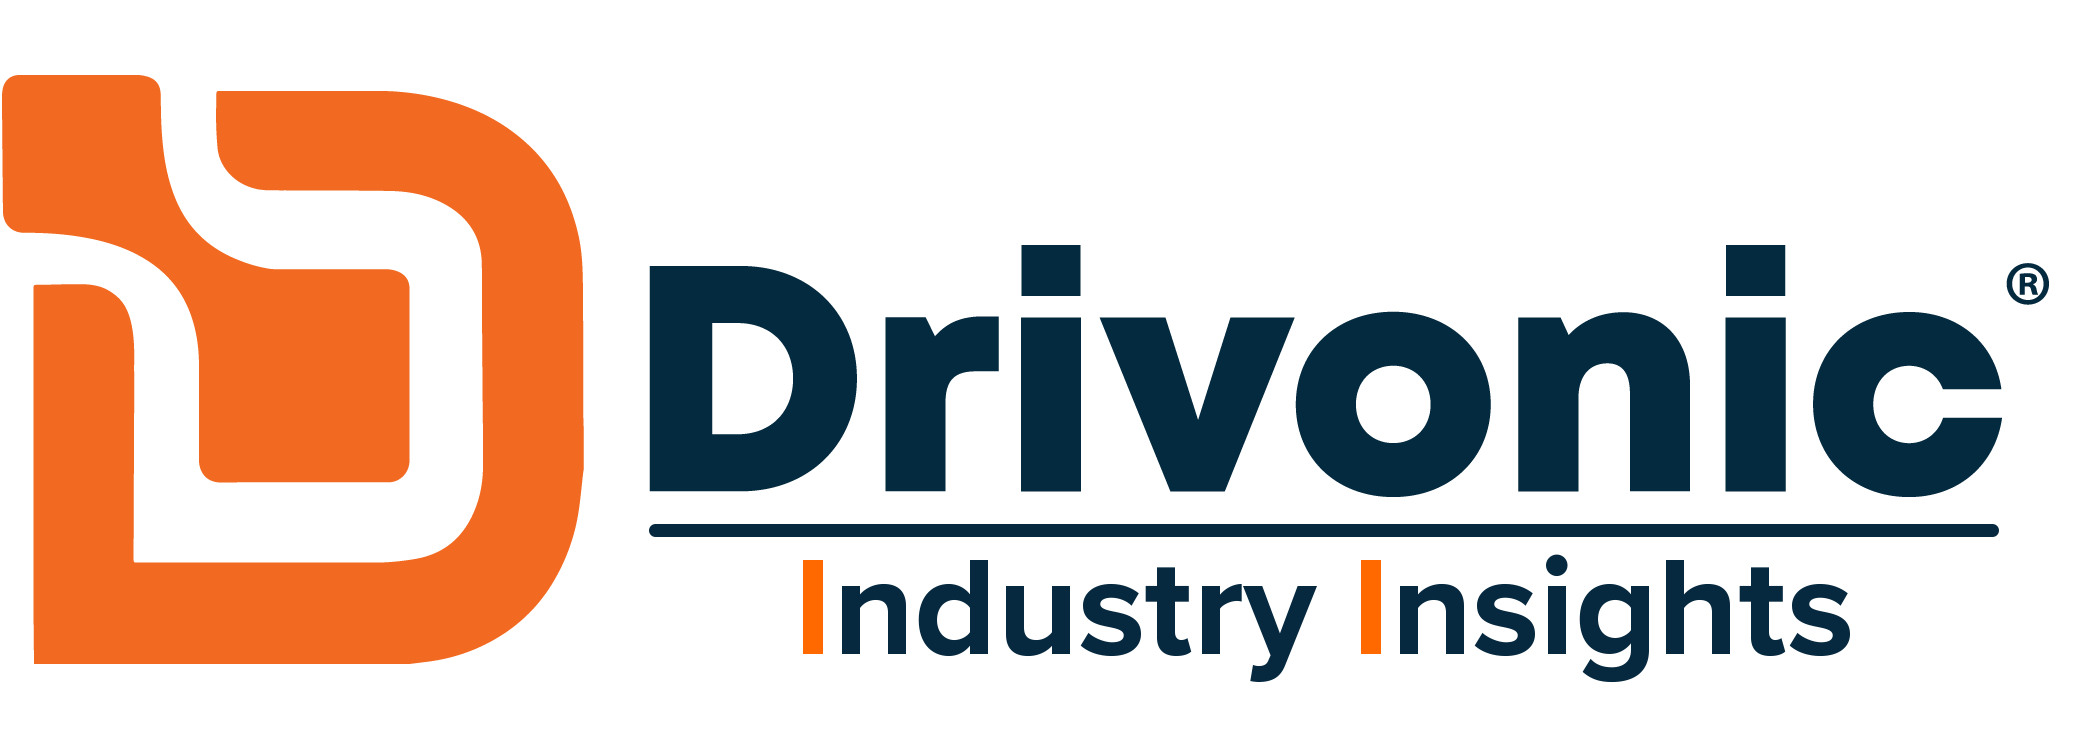 Drivonic Logo - Primary